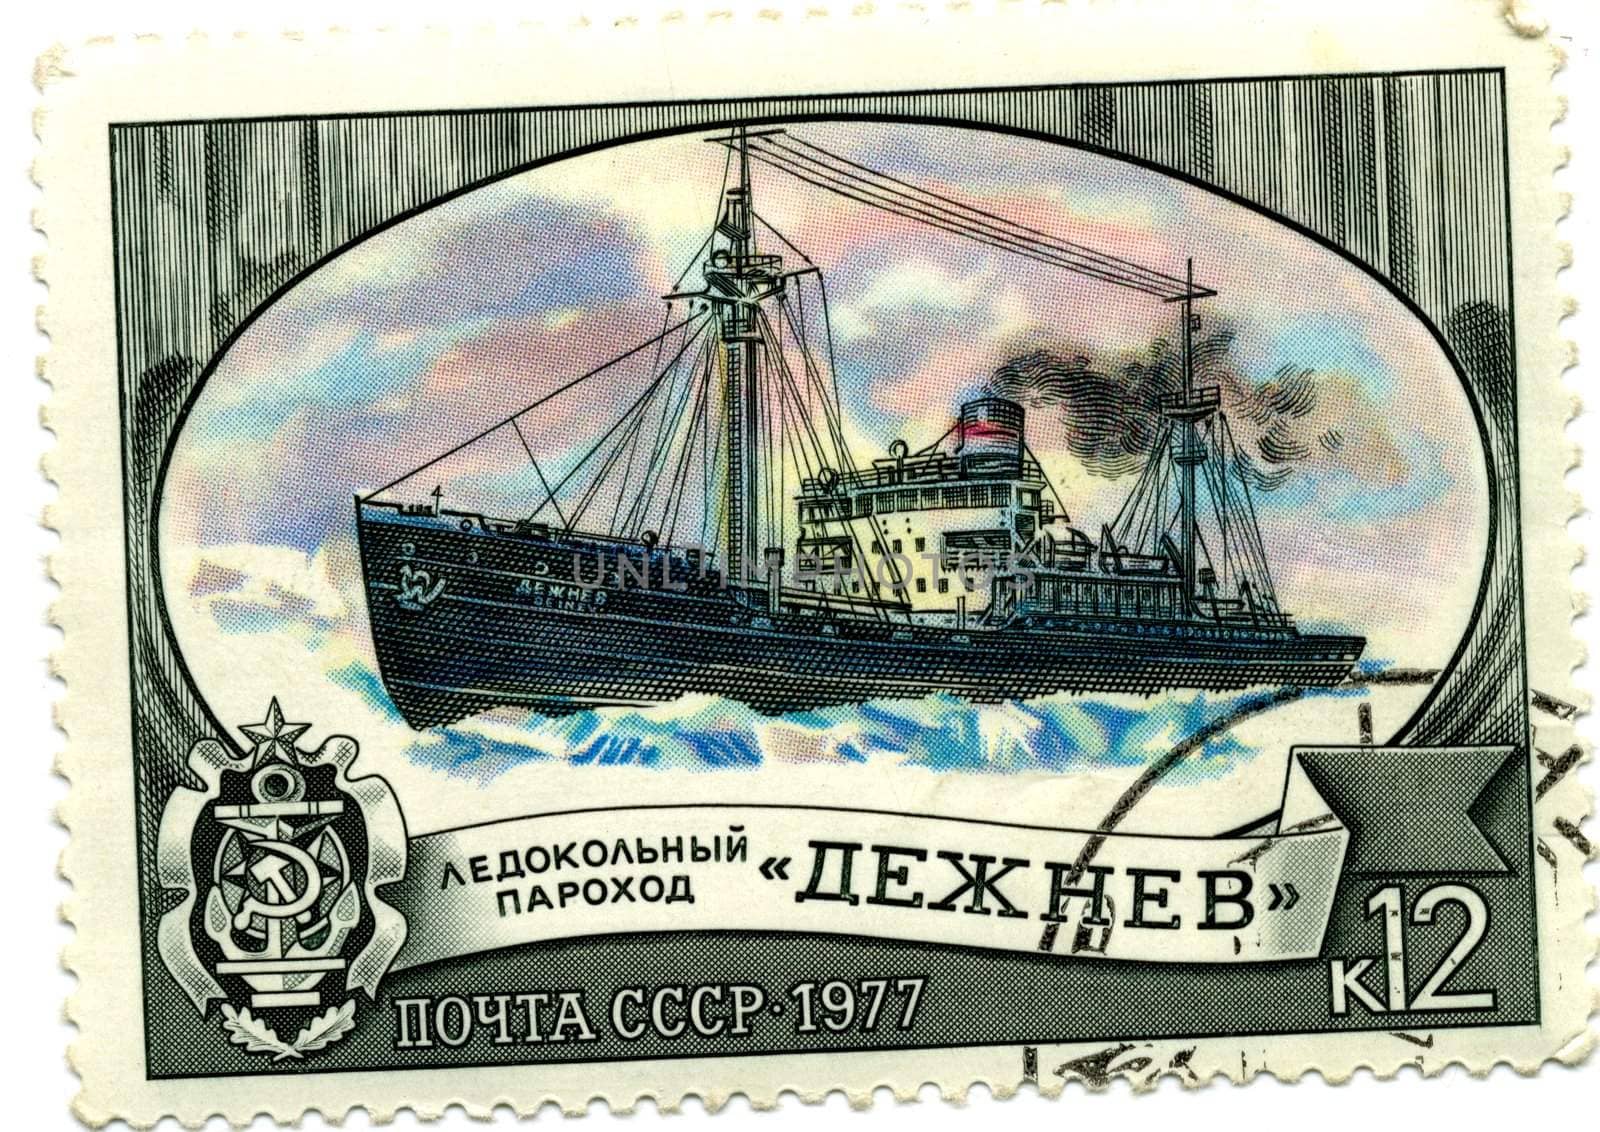 Old USSR stamp